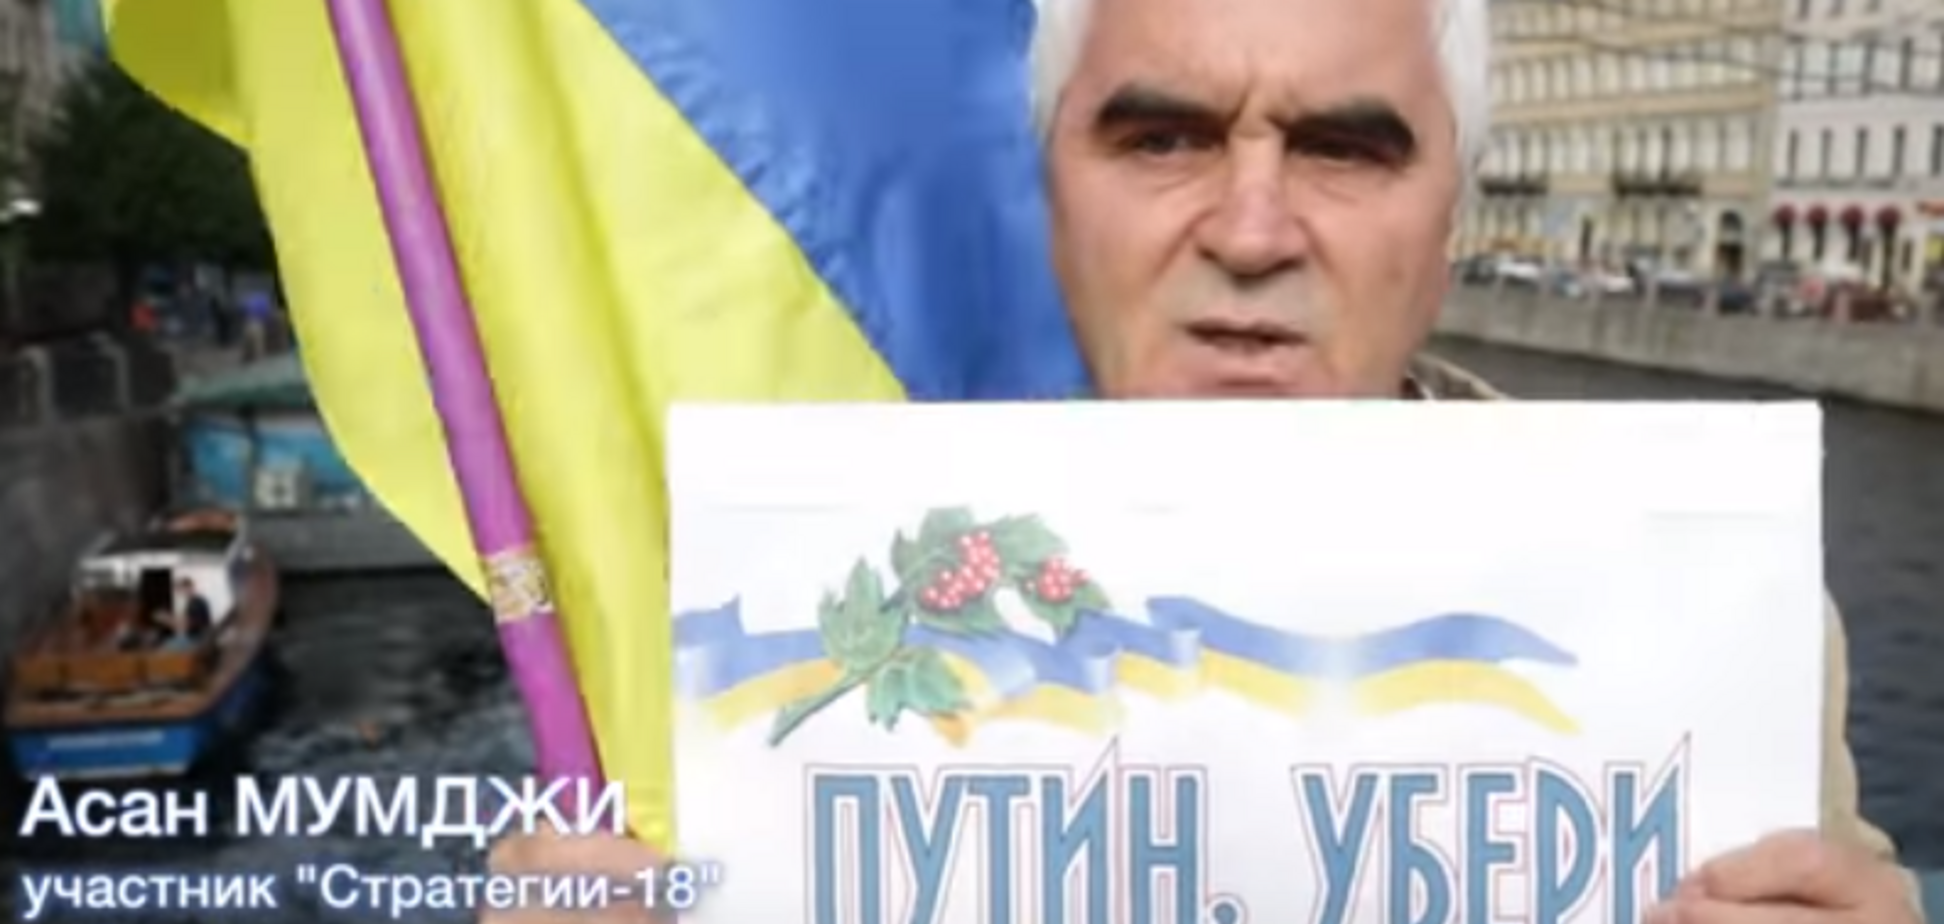 'Мы для них оккупанты': в сети показали, как россияне реагируют на флаг Украины